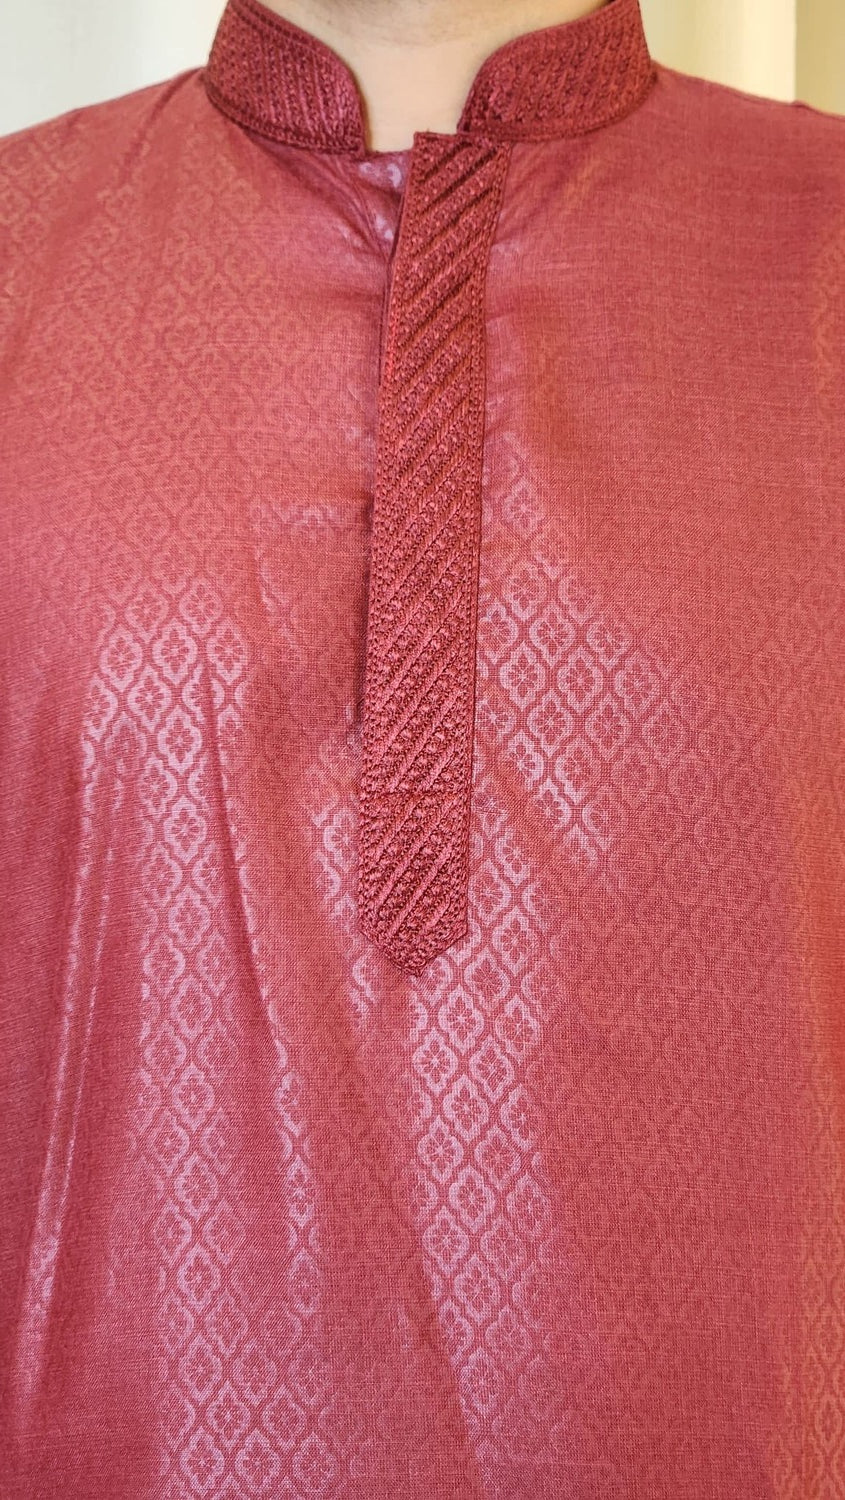 Maroon Foil Printed Cotton Kurta with Pajama Spade